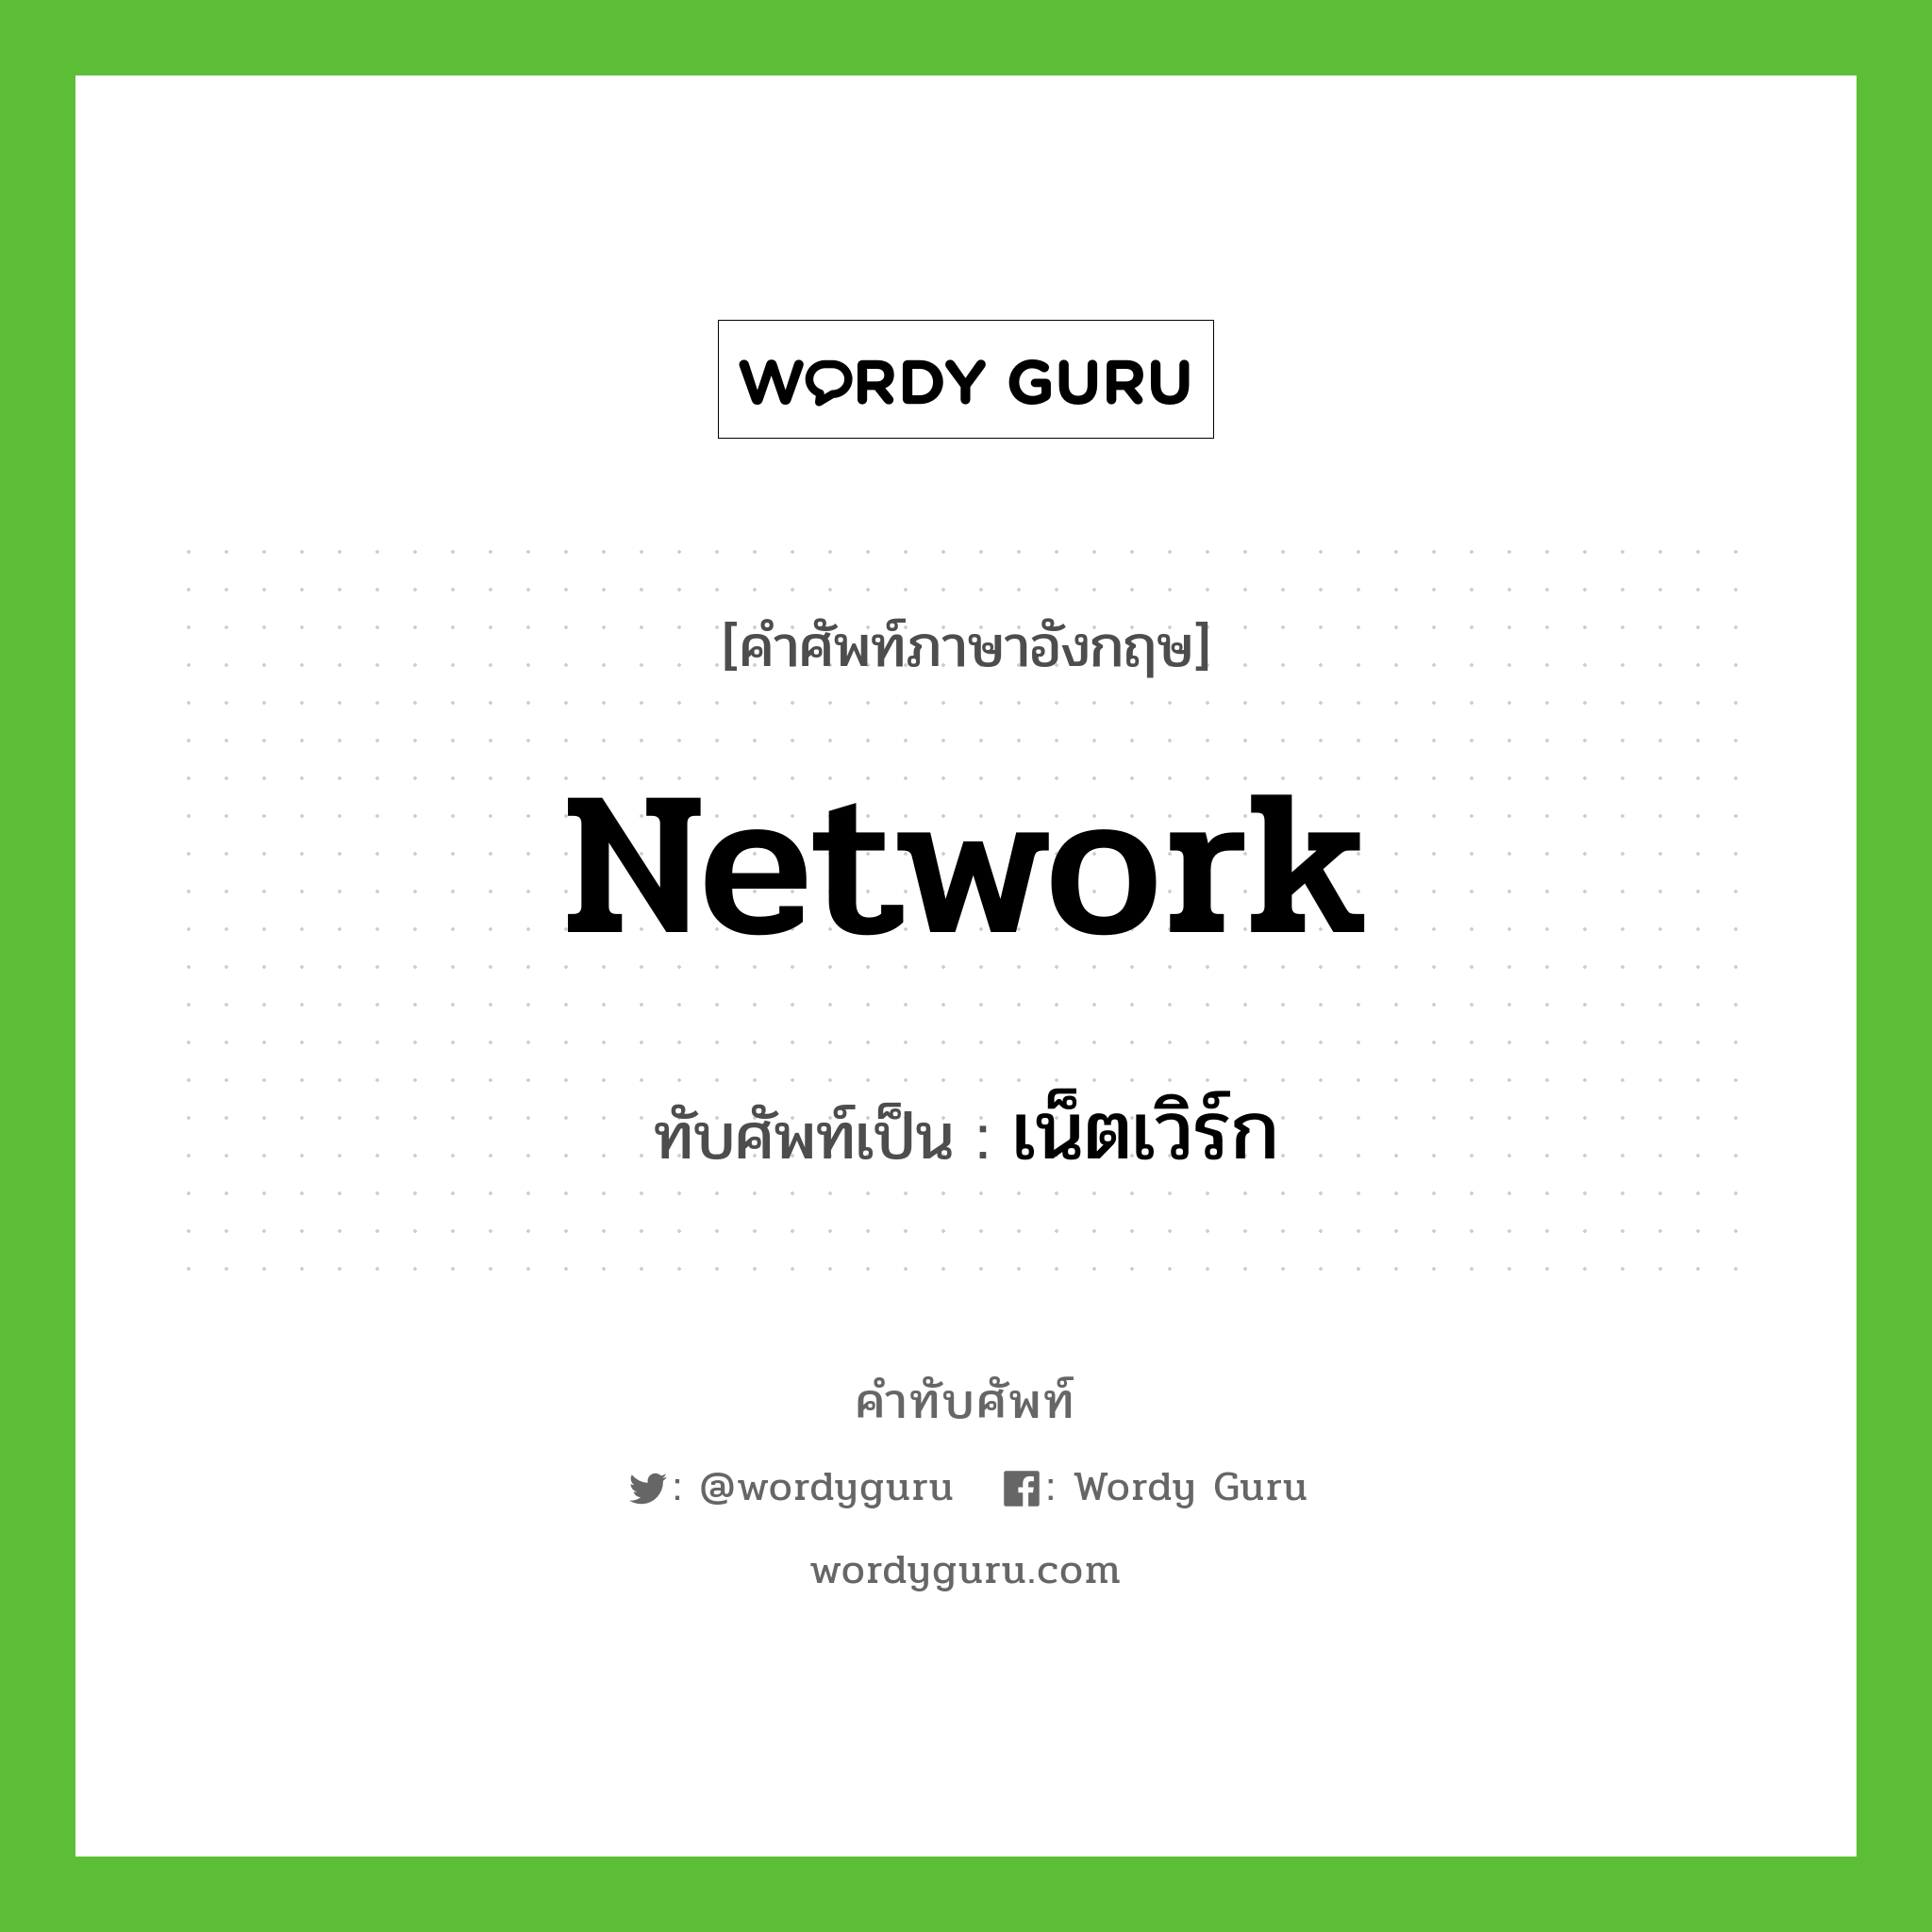 network เขียนเป็นคำไทยว่าอะไร?, คำศัพท์ภาษาอังกฤษ network ทับศัพท์เป็น เน็ตเวิร์ก